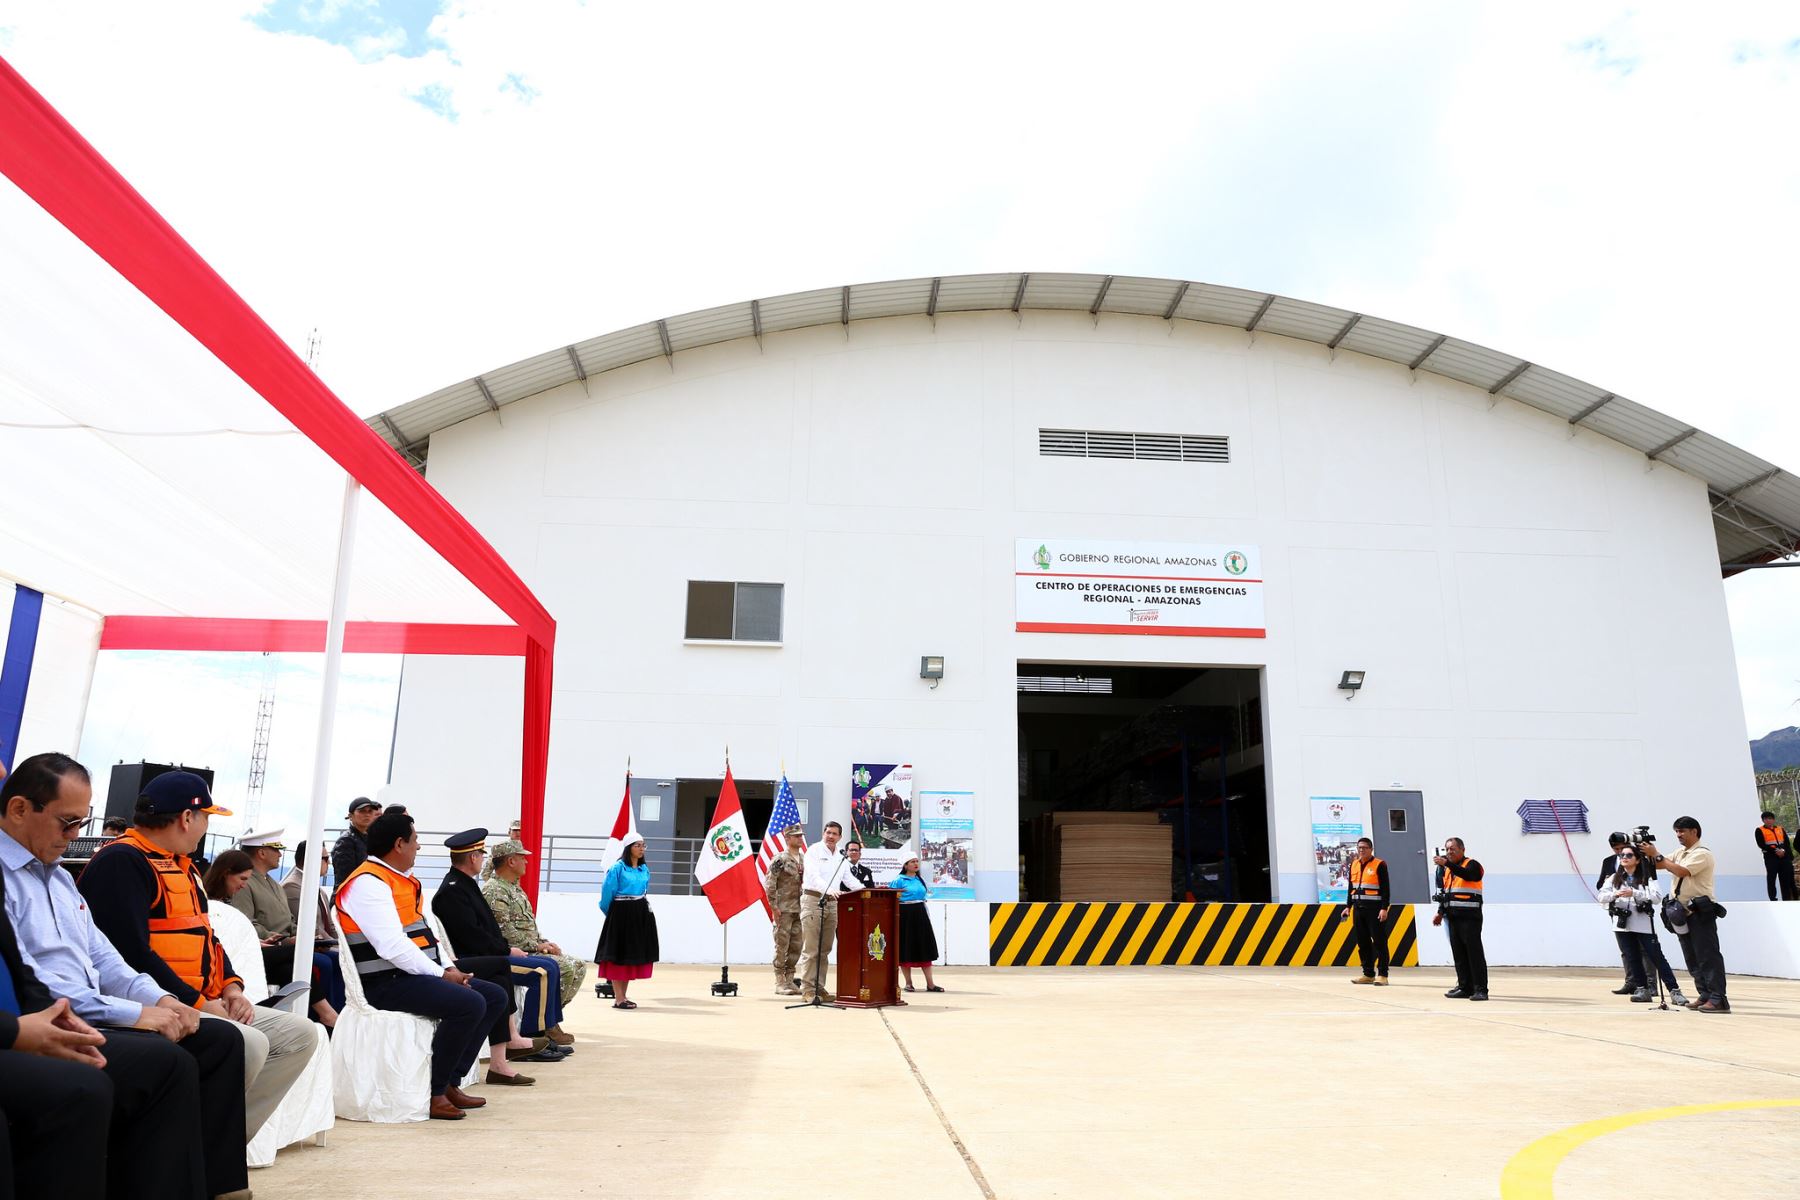 Fue inaugurado el nuevo Centro de Operaciones de Emergencia Regional COER Amazonas en Chachapoyas, con la participación del ministro de Defensa, Jorge Chávez, la embajadora de EE.UU. en Perú, Lisa Kenna, y autoridades regionales y locales de Amazonas. Foto: ANDINA/Mindef